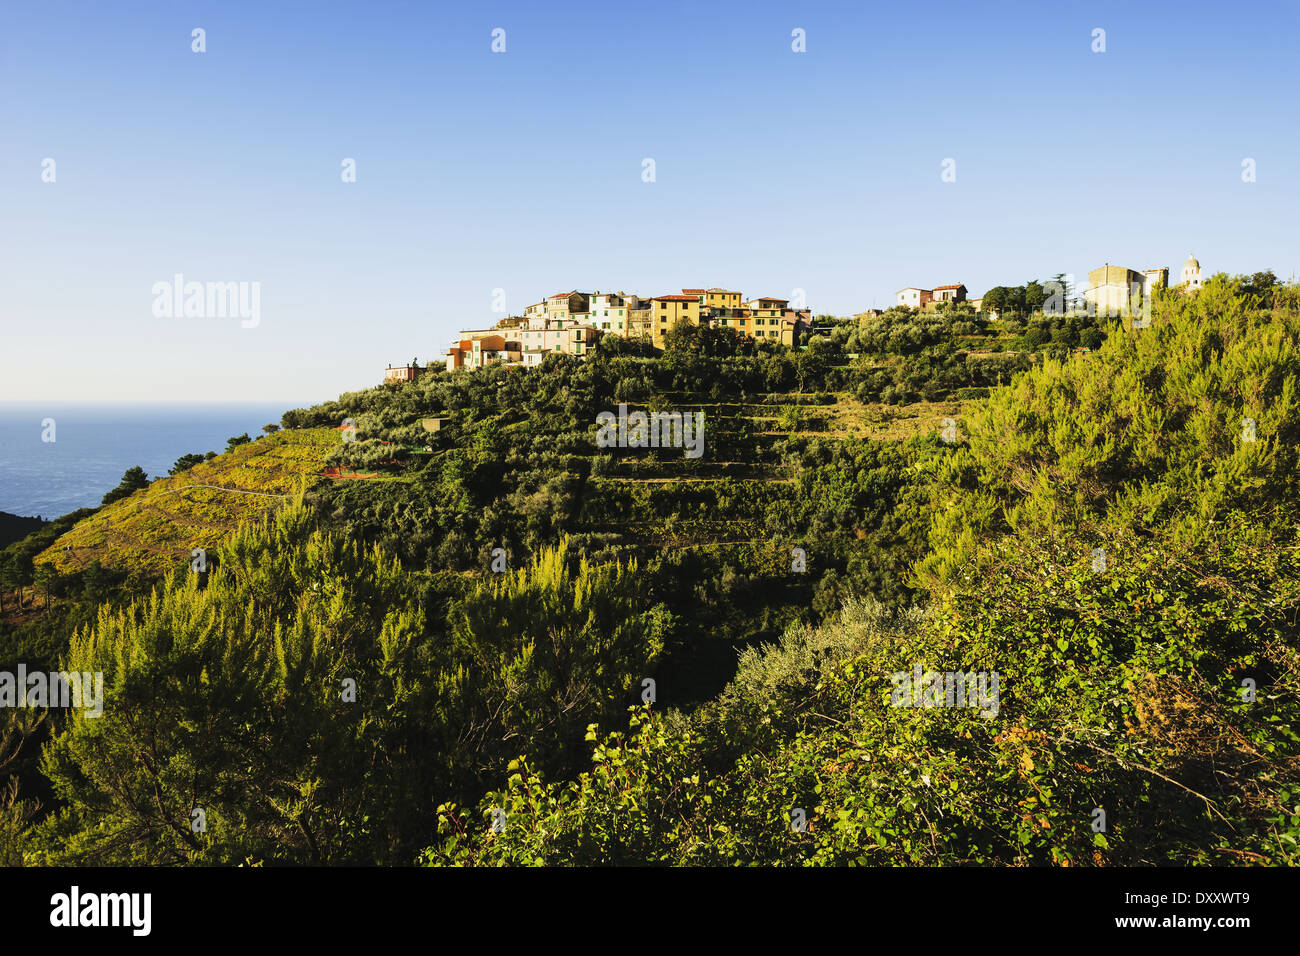 The village of Volastra, Cinque Terre; Volastra, Liguria, Italy Stock Photo